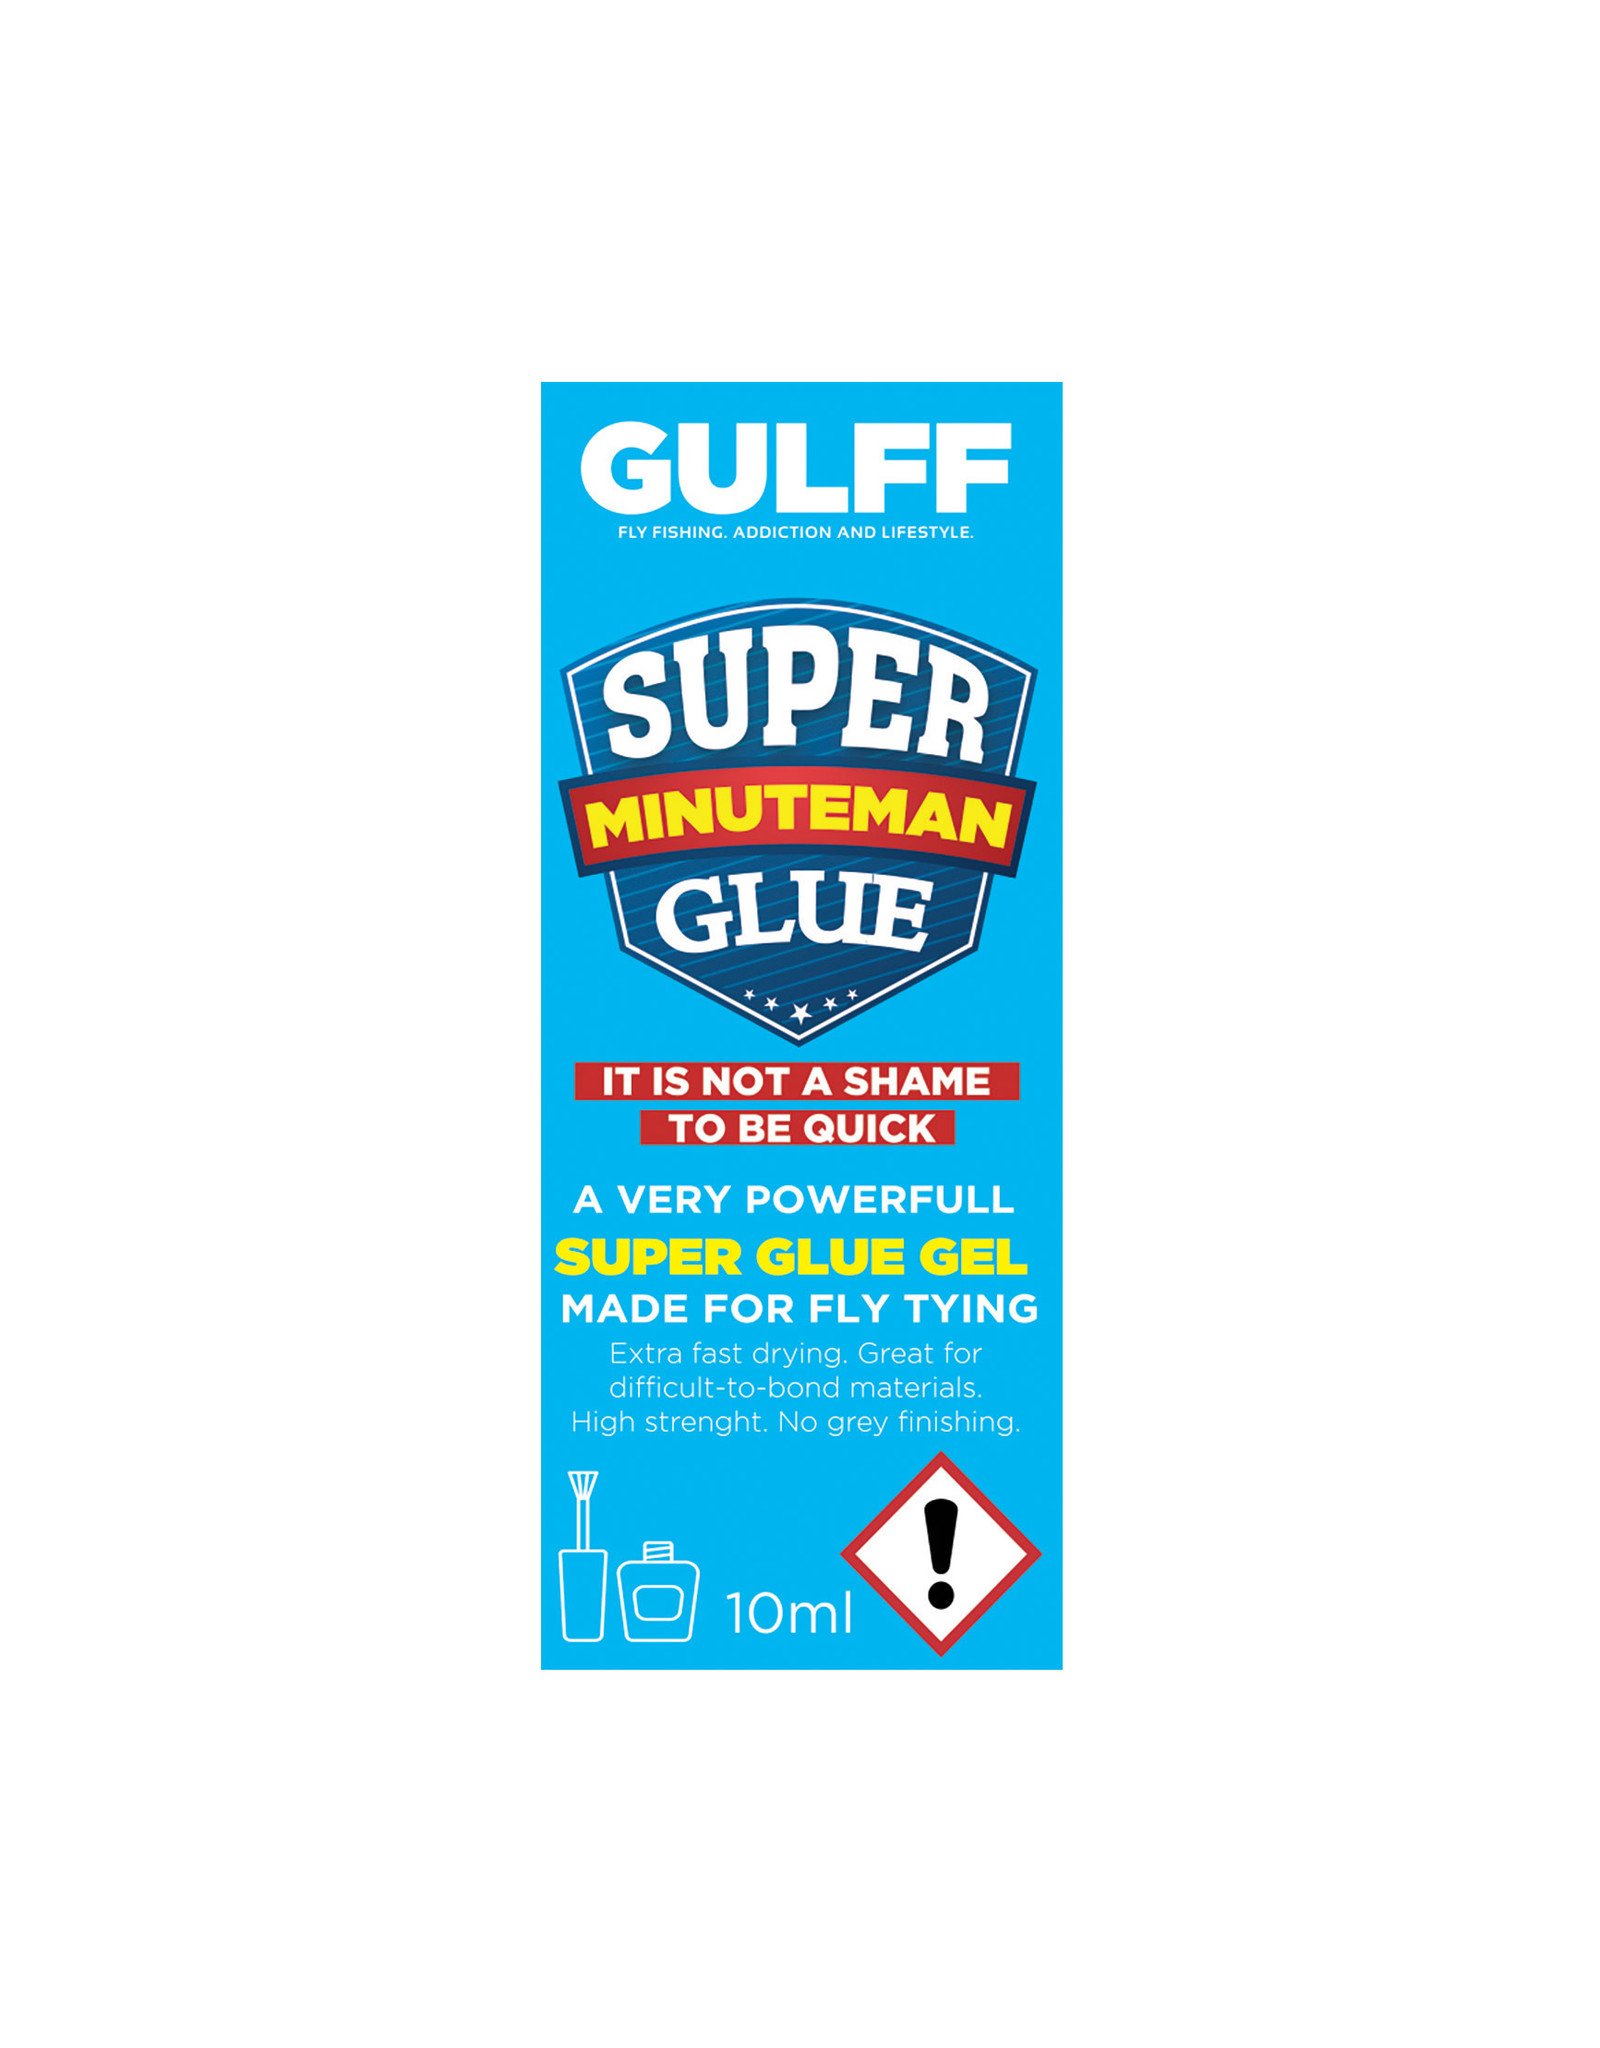 https://cdn.shoplightspeed.com/shops/635070/files/39842779/1600x2048x2/gulff-gulff-minuteman-super-glue-gel.jpg